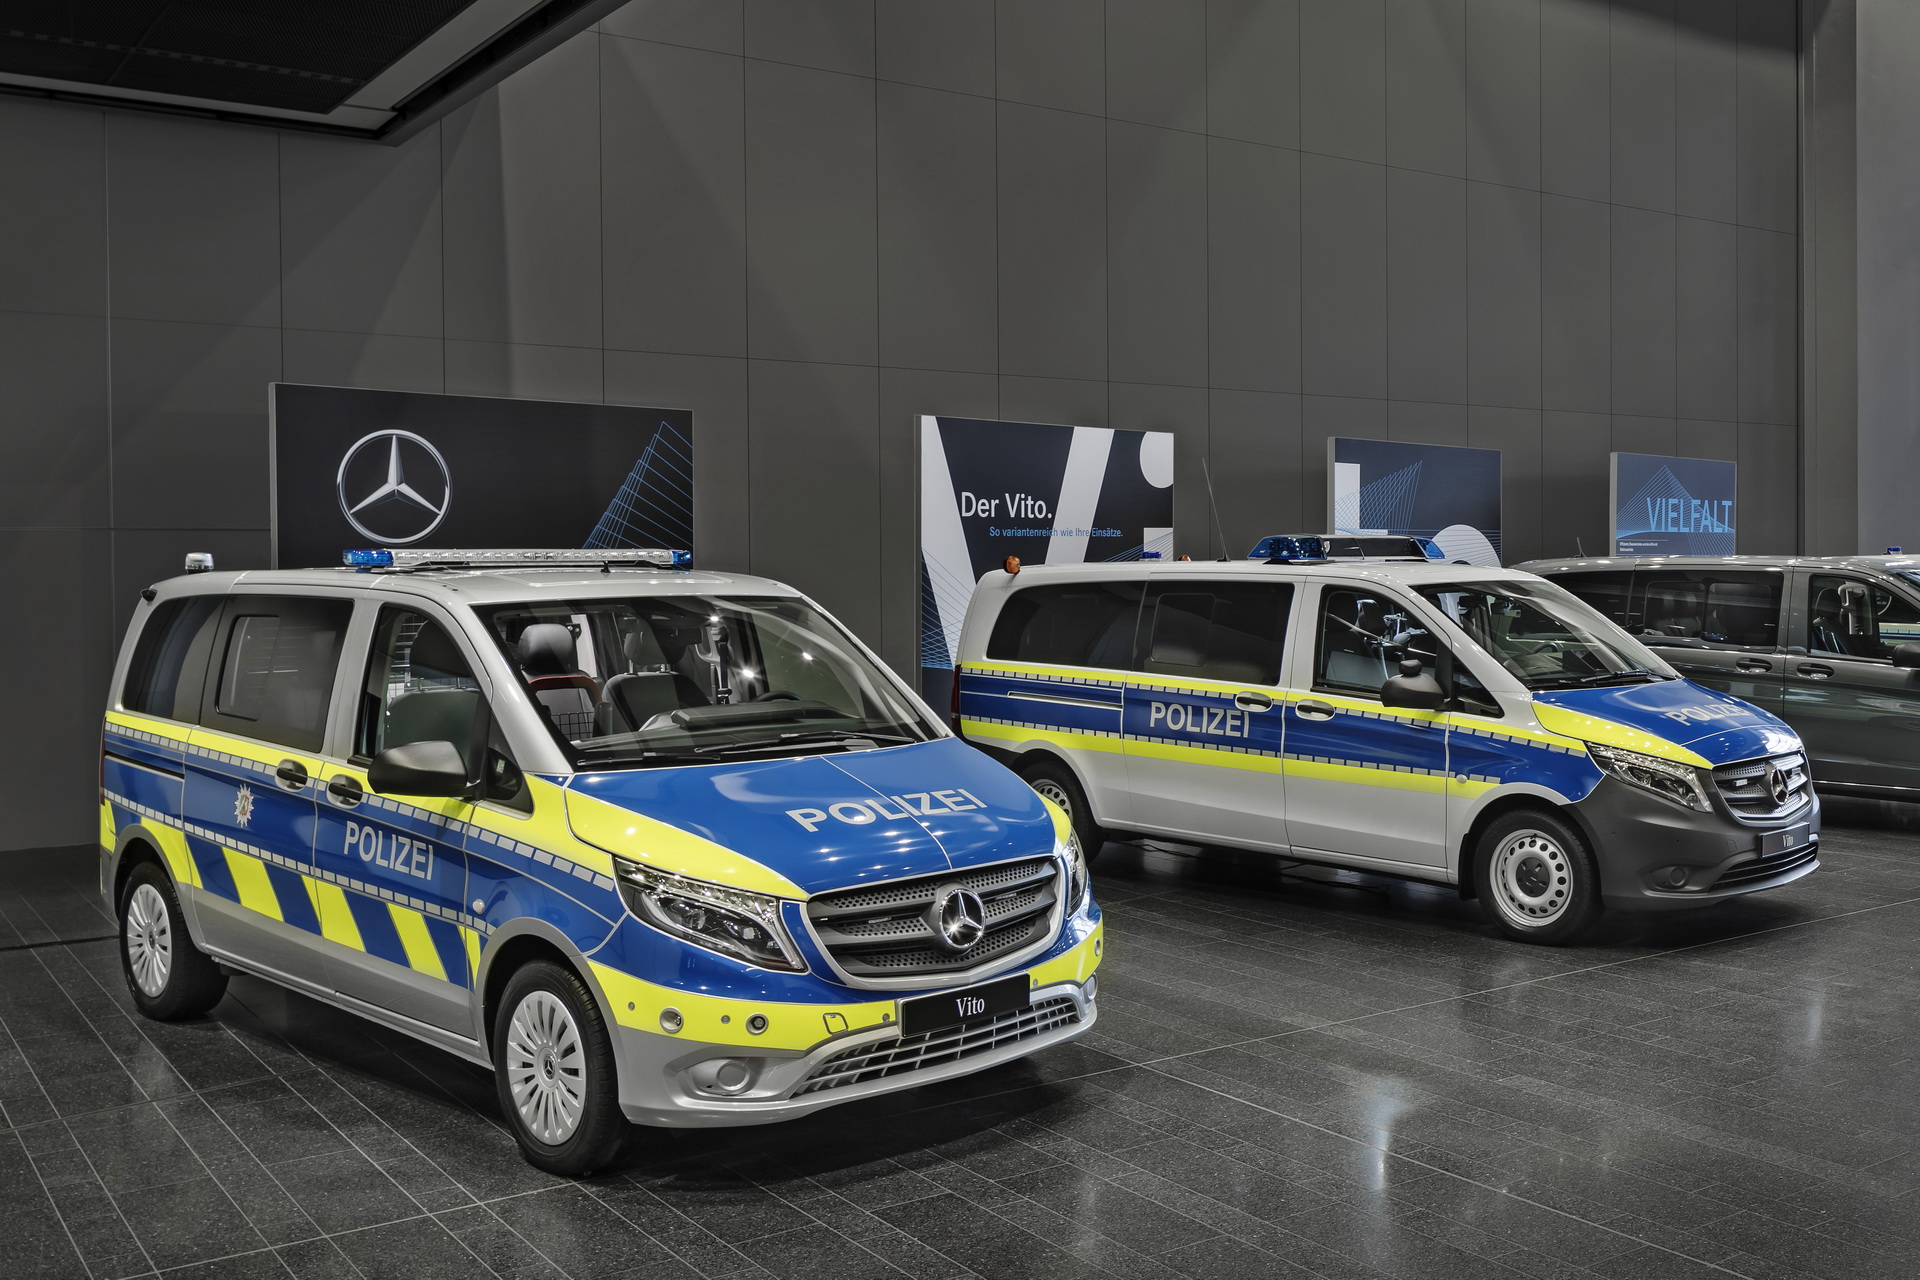 Mercedes Benz Policia Coches Electricos (1)